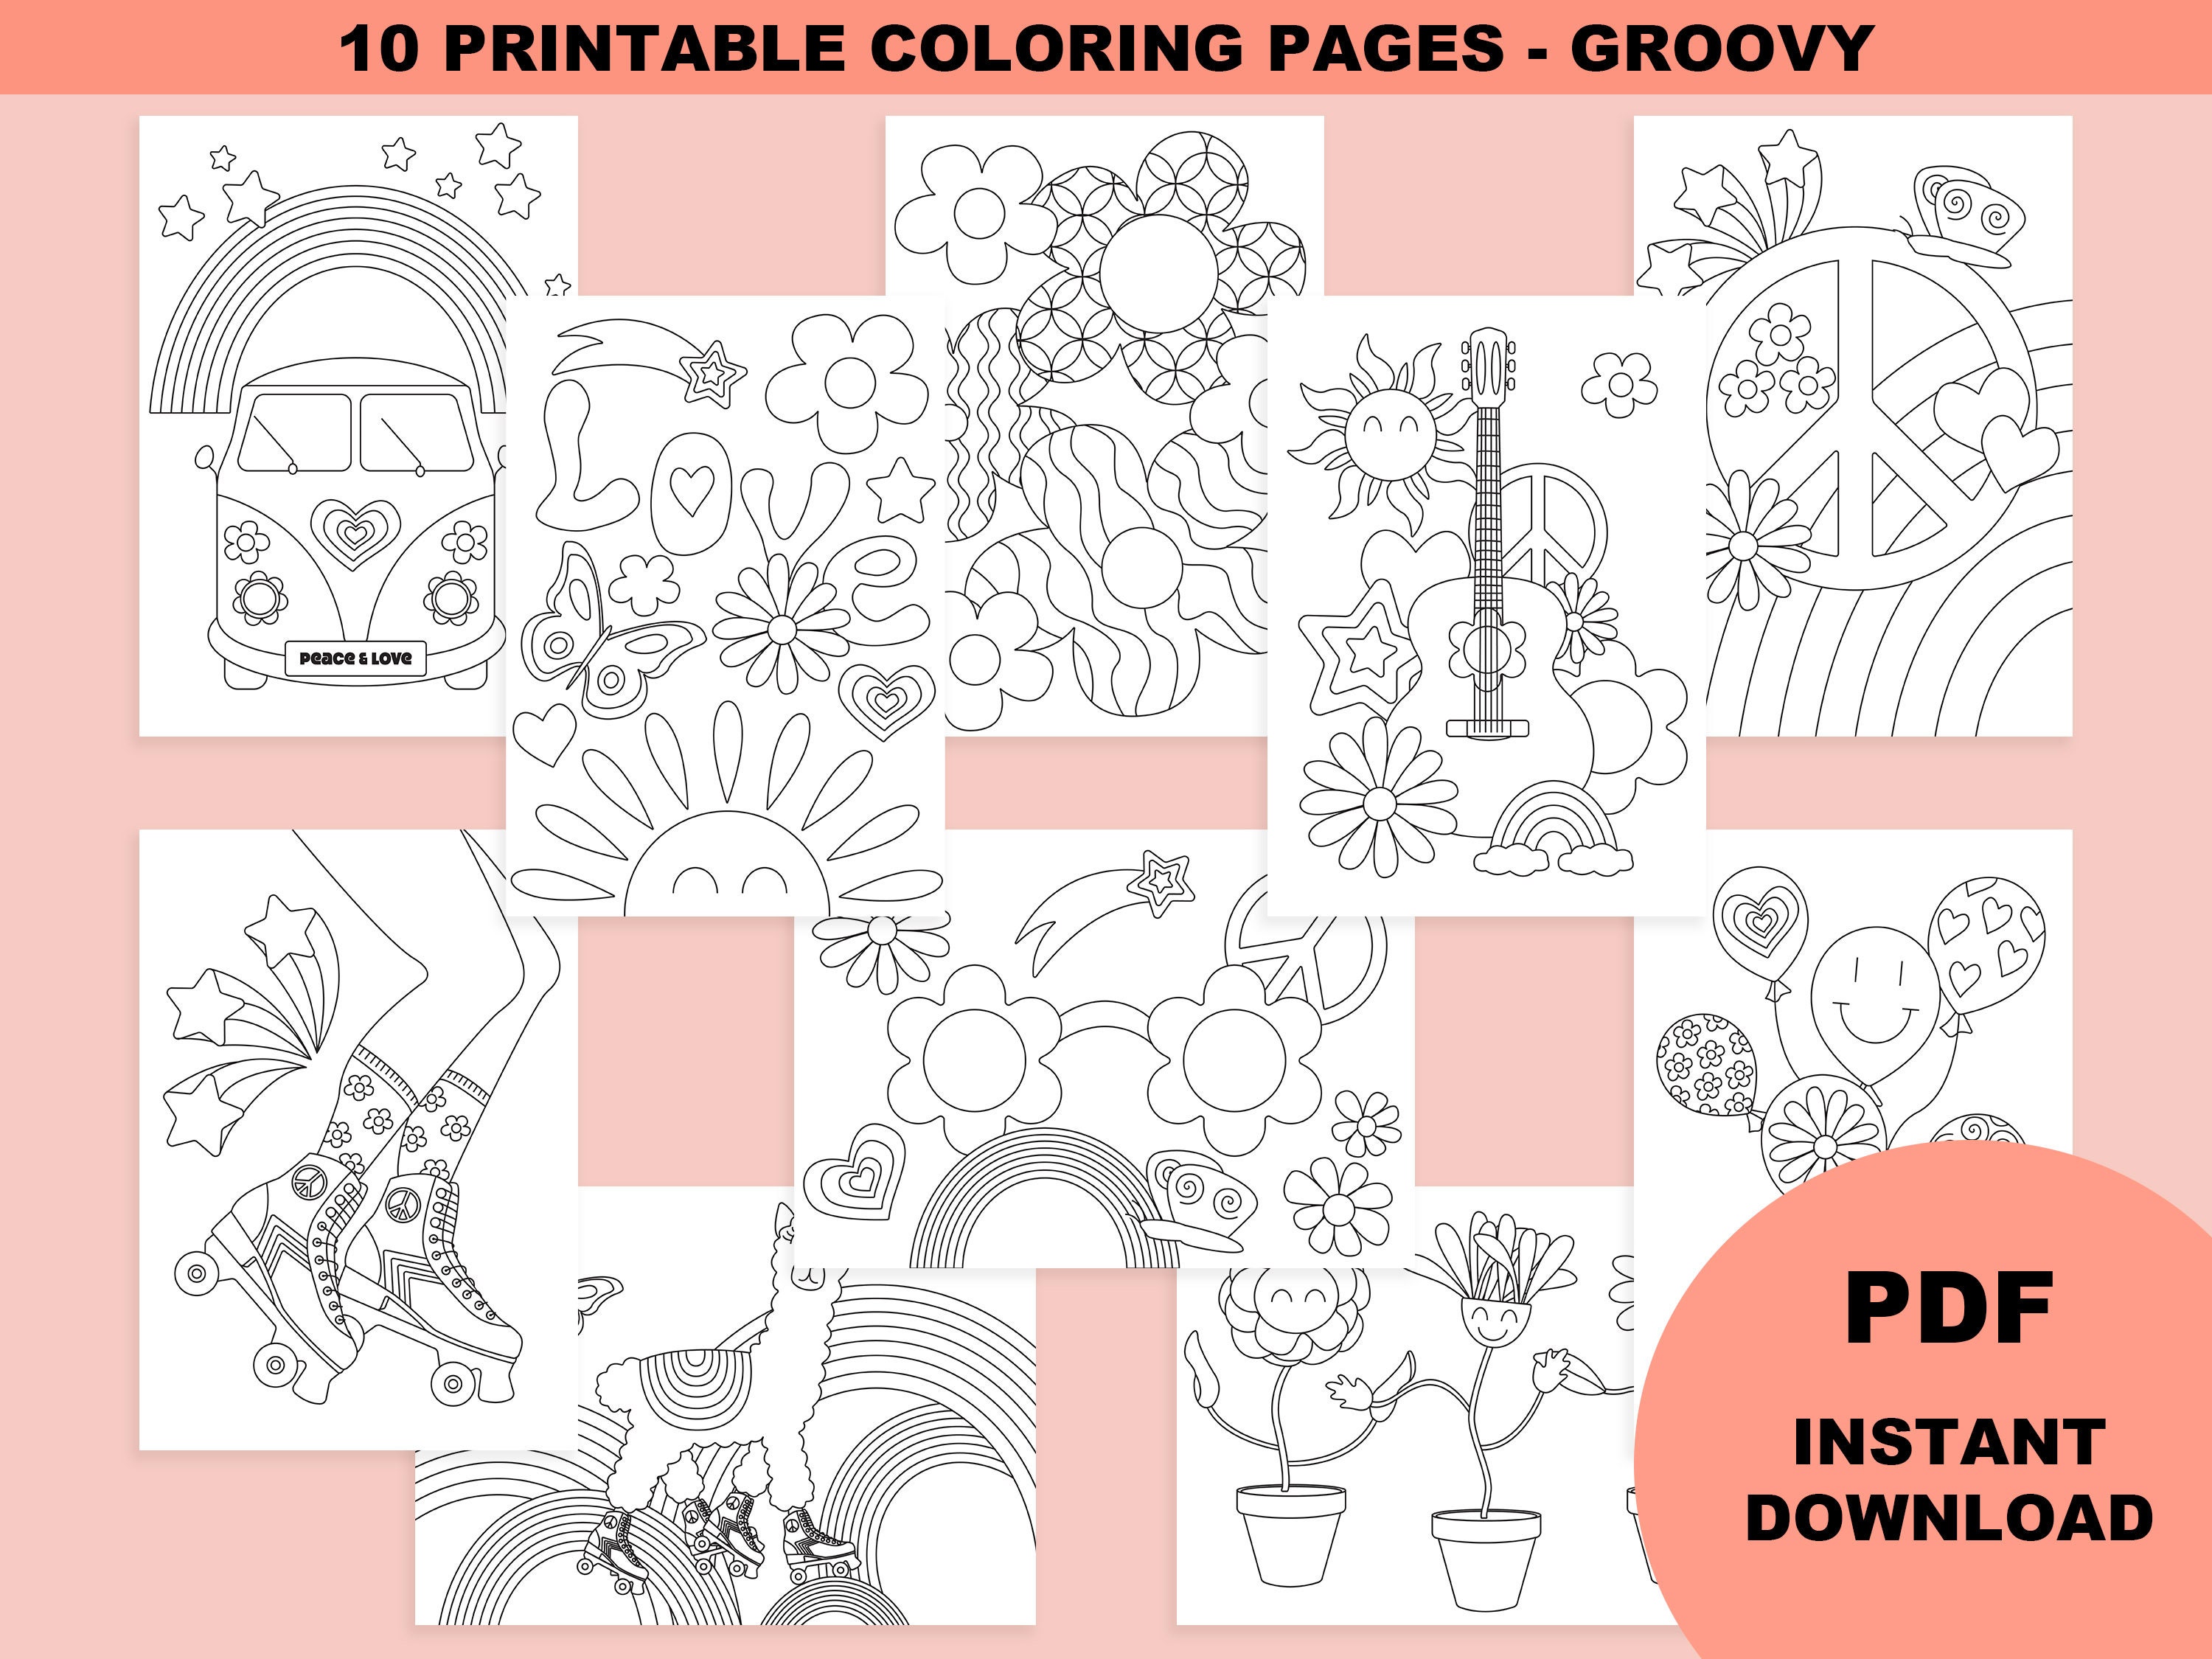 Cahier De Coloriage Groovy, Coloriage Numérique, Coloriage à Imprimer,  Coloriage Hippie, Coloriage Adulte, Anniversaire Theme Hippie Groovy 